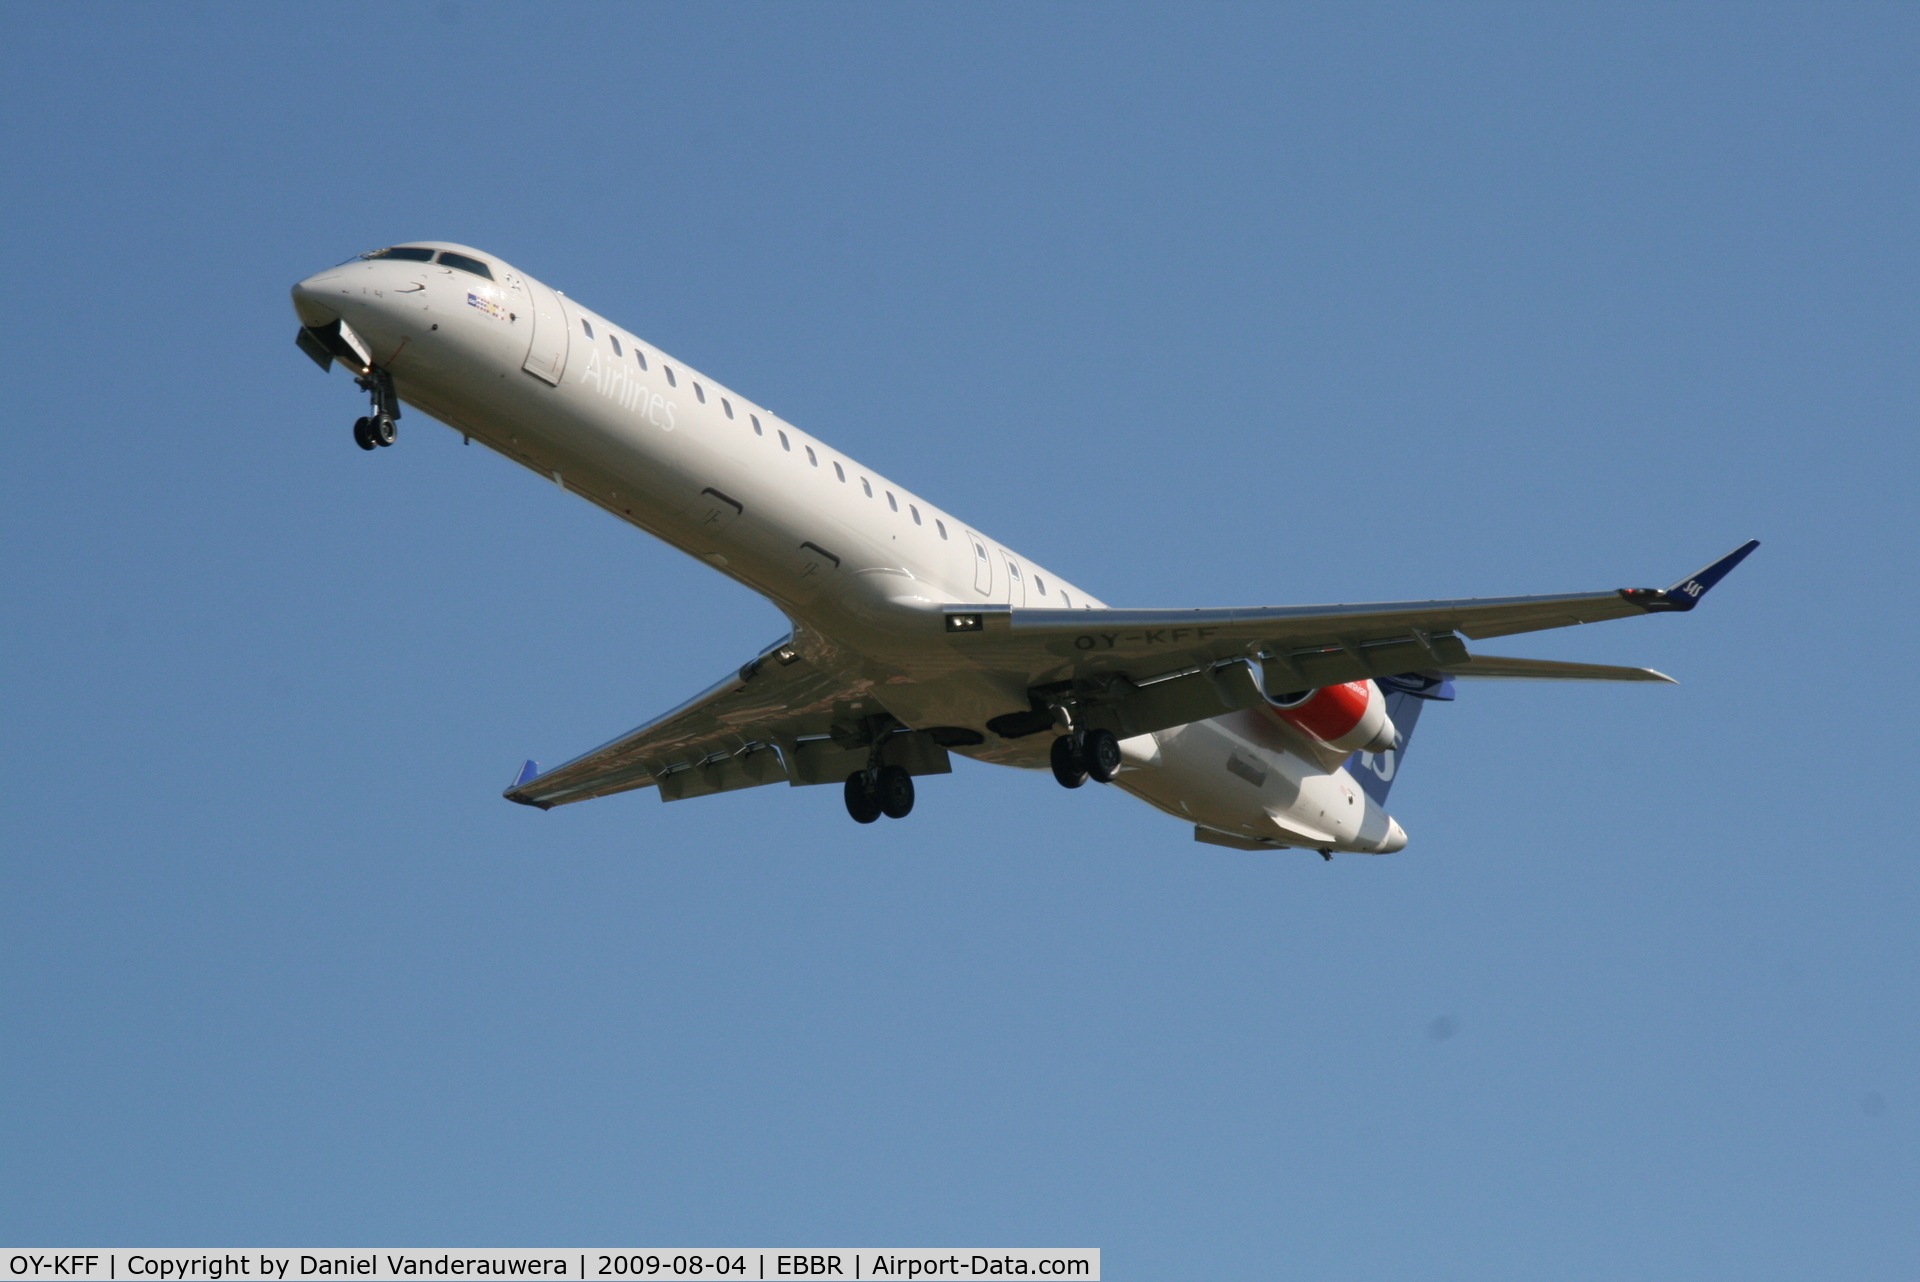 OY-KFF, 2009 Bombardier CRJ-900 (CL-600-2D24) C/N 15231, arrival of flight SK593 to rwy 25R